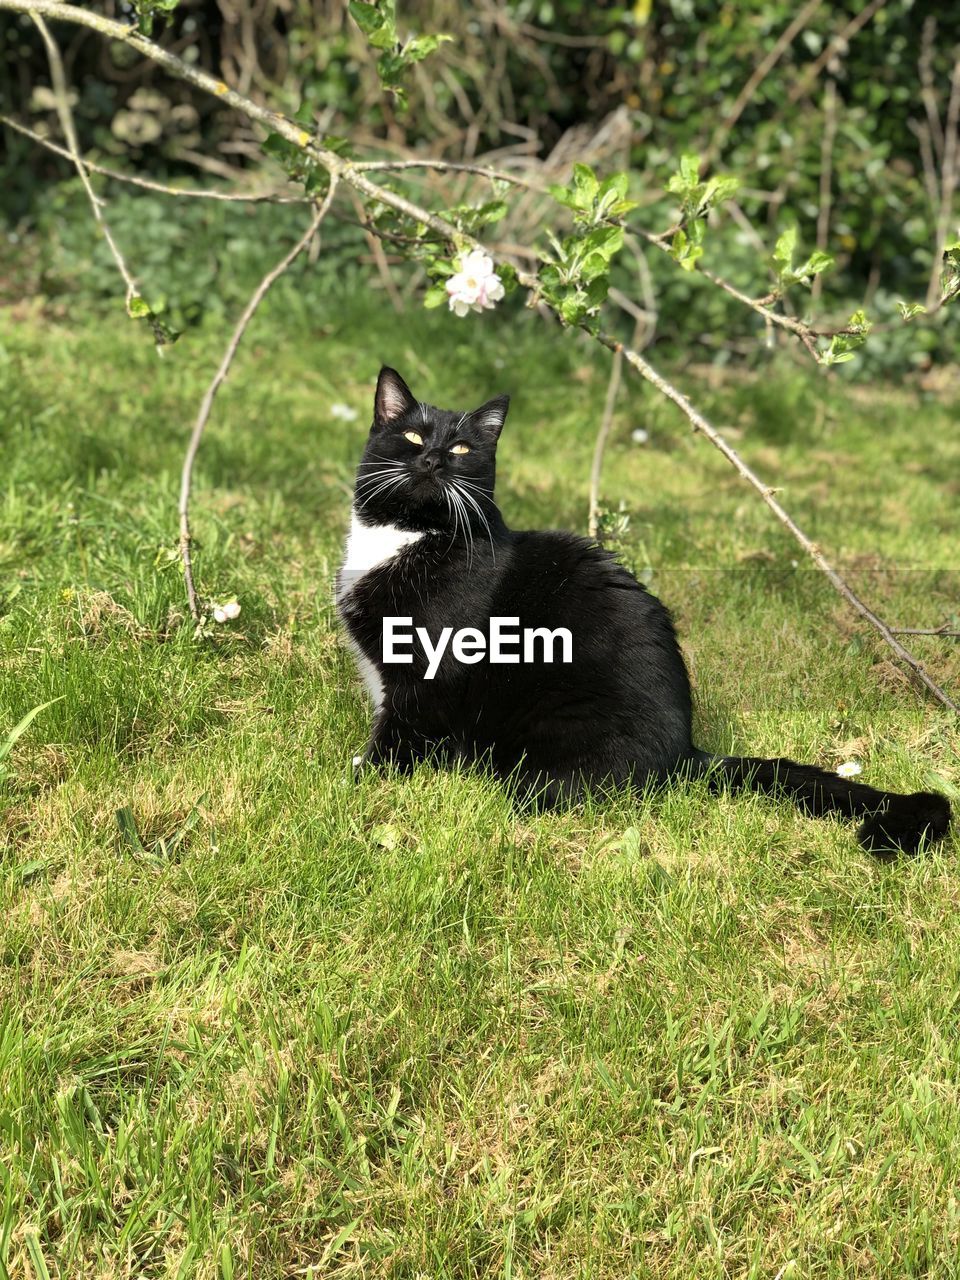 BLACK CAT LYING ON FIELD